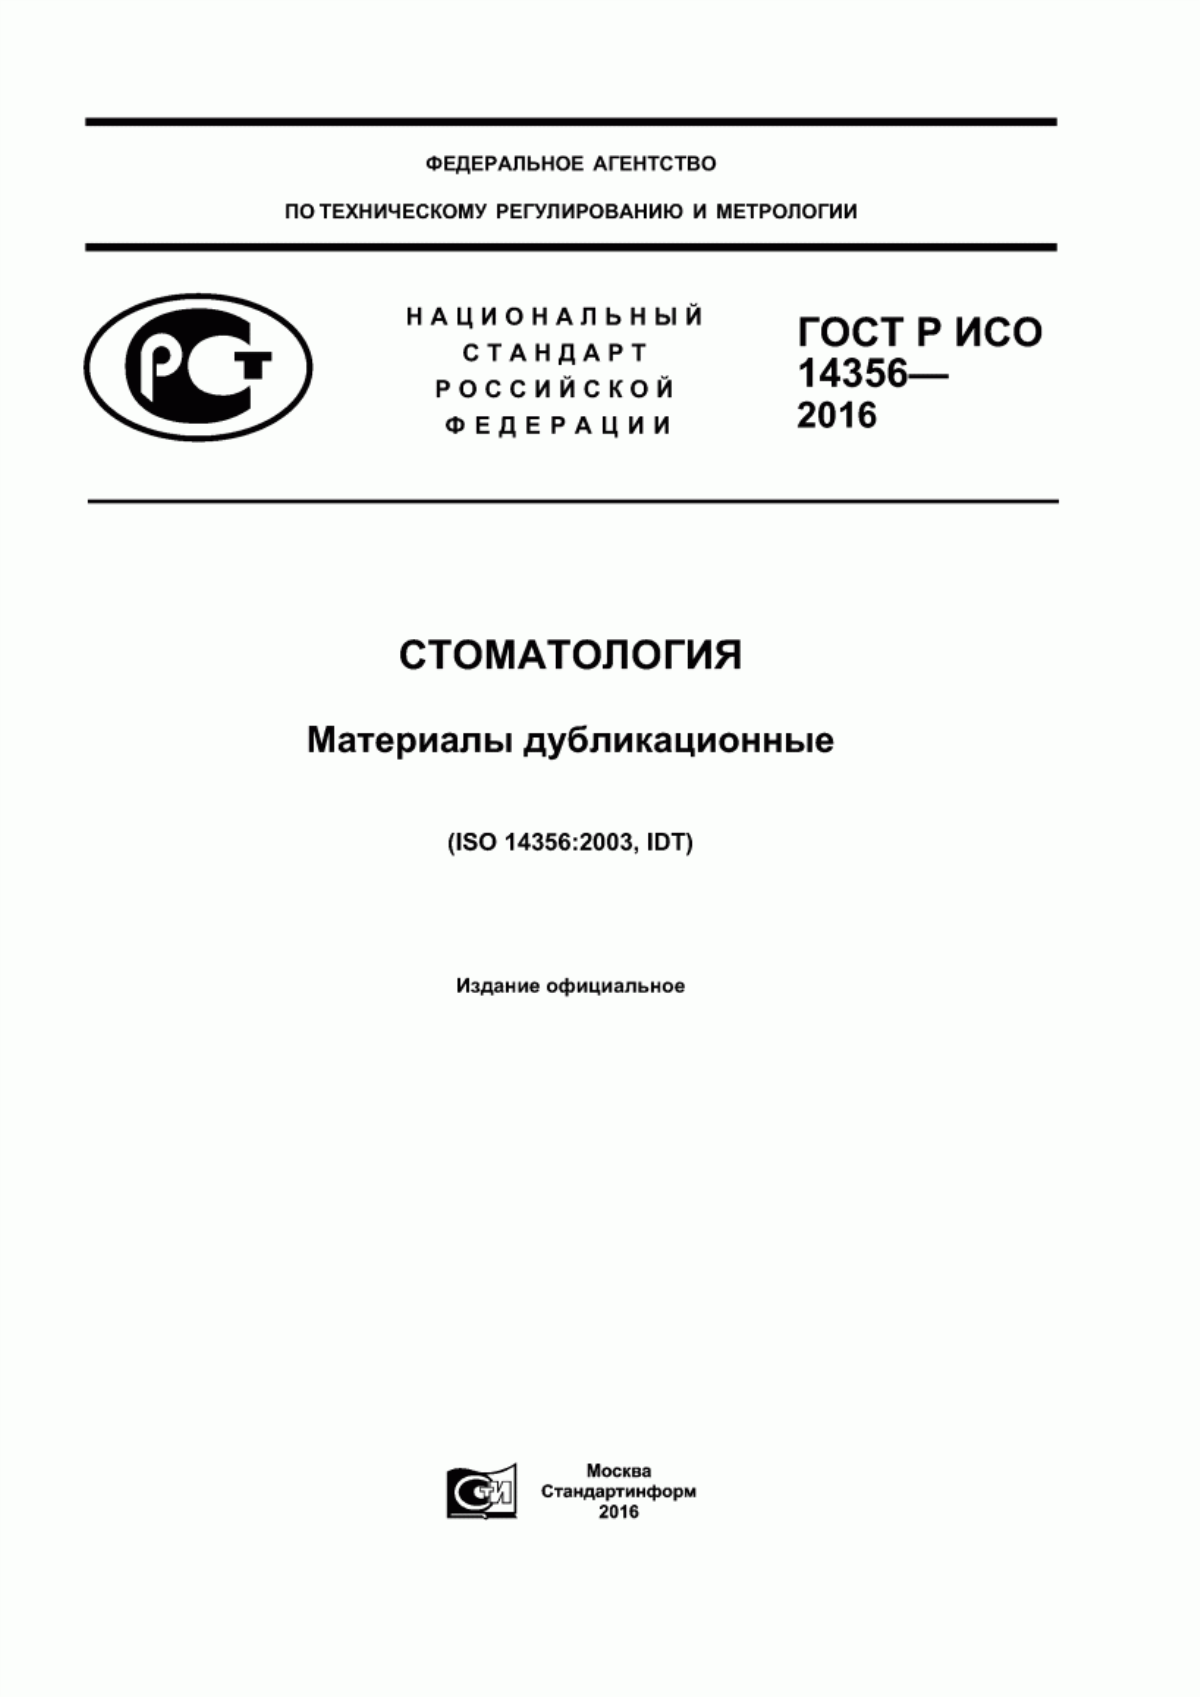 ГОСТ Р ИСО 14356-2016 Стоматология. Материалы дубликационные